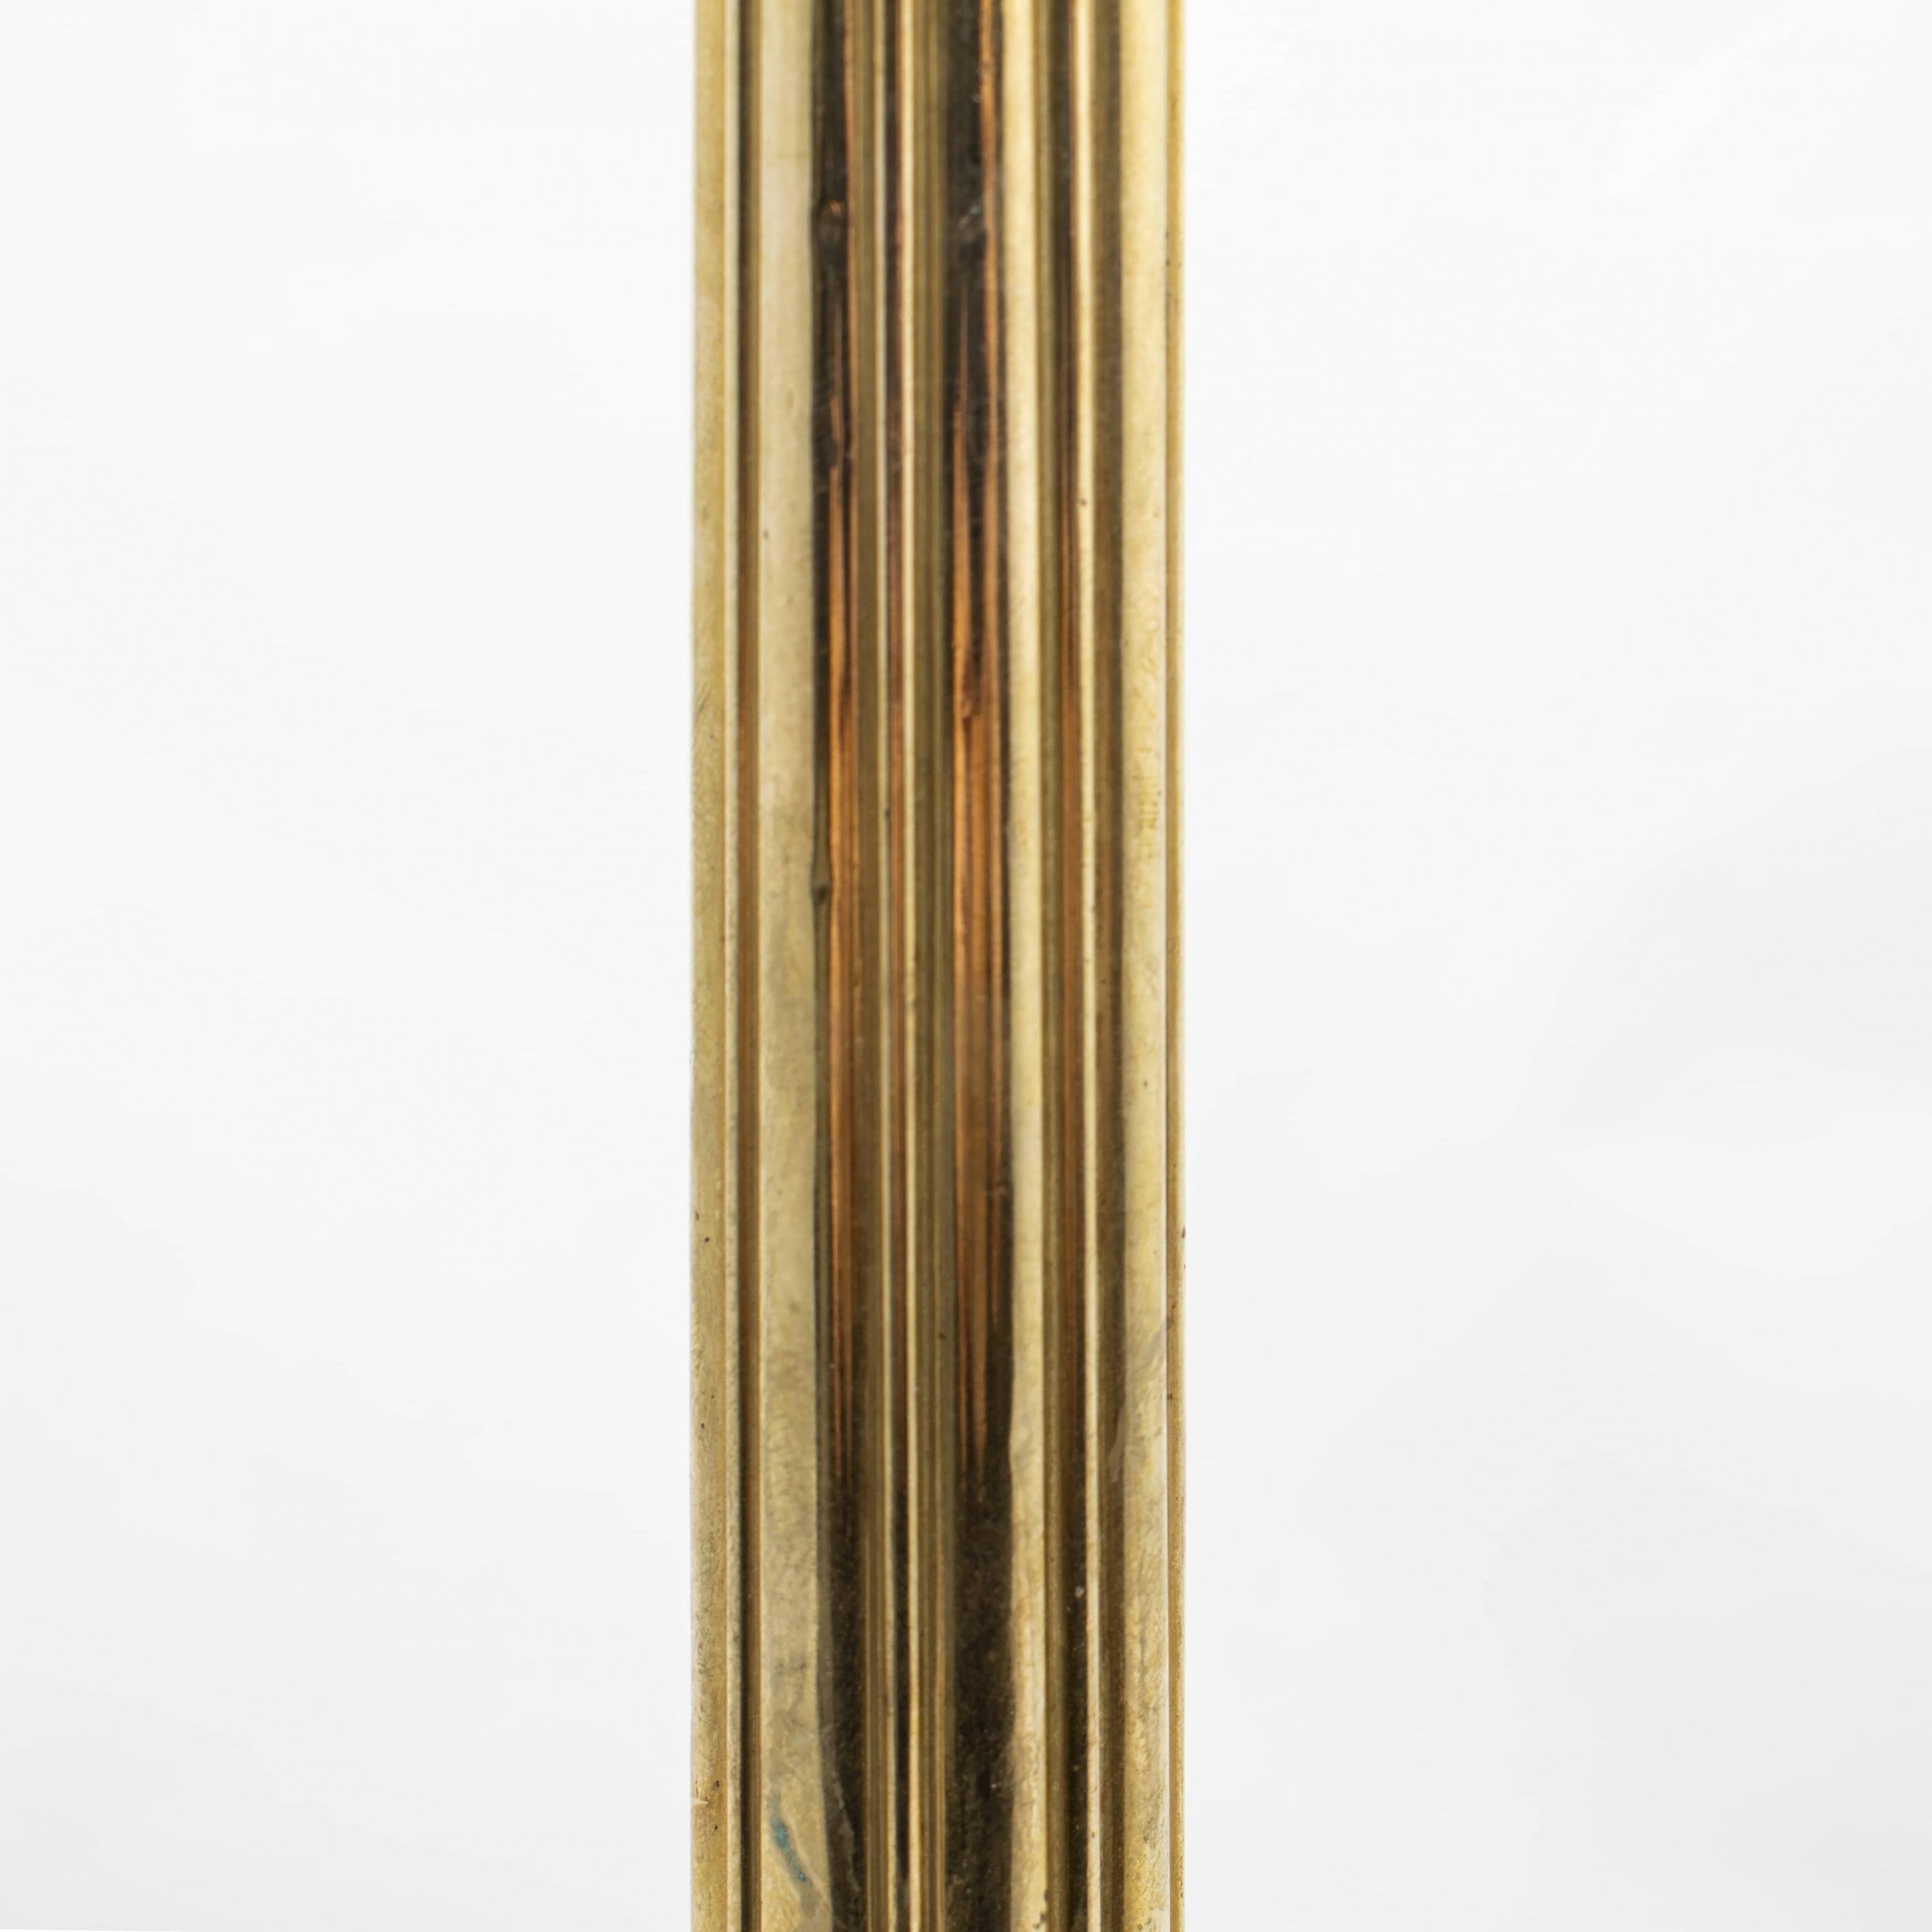 MG Bindesbøll -Vilhelm Bissen Bronze Table Lamp For Sale 3